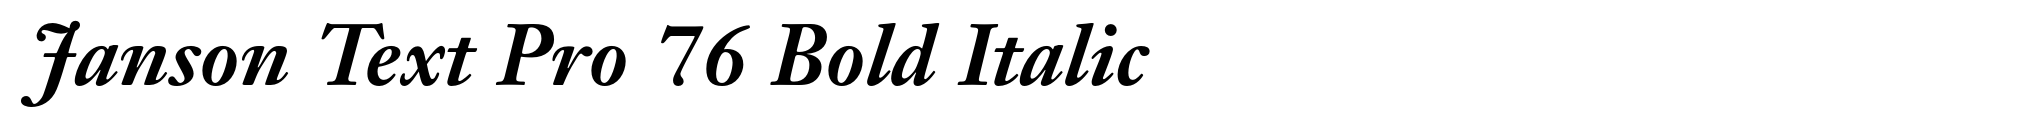 Janson Text Pro 76 Bold Italic image